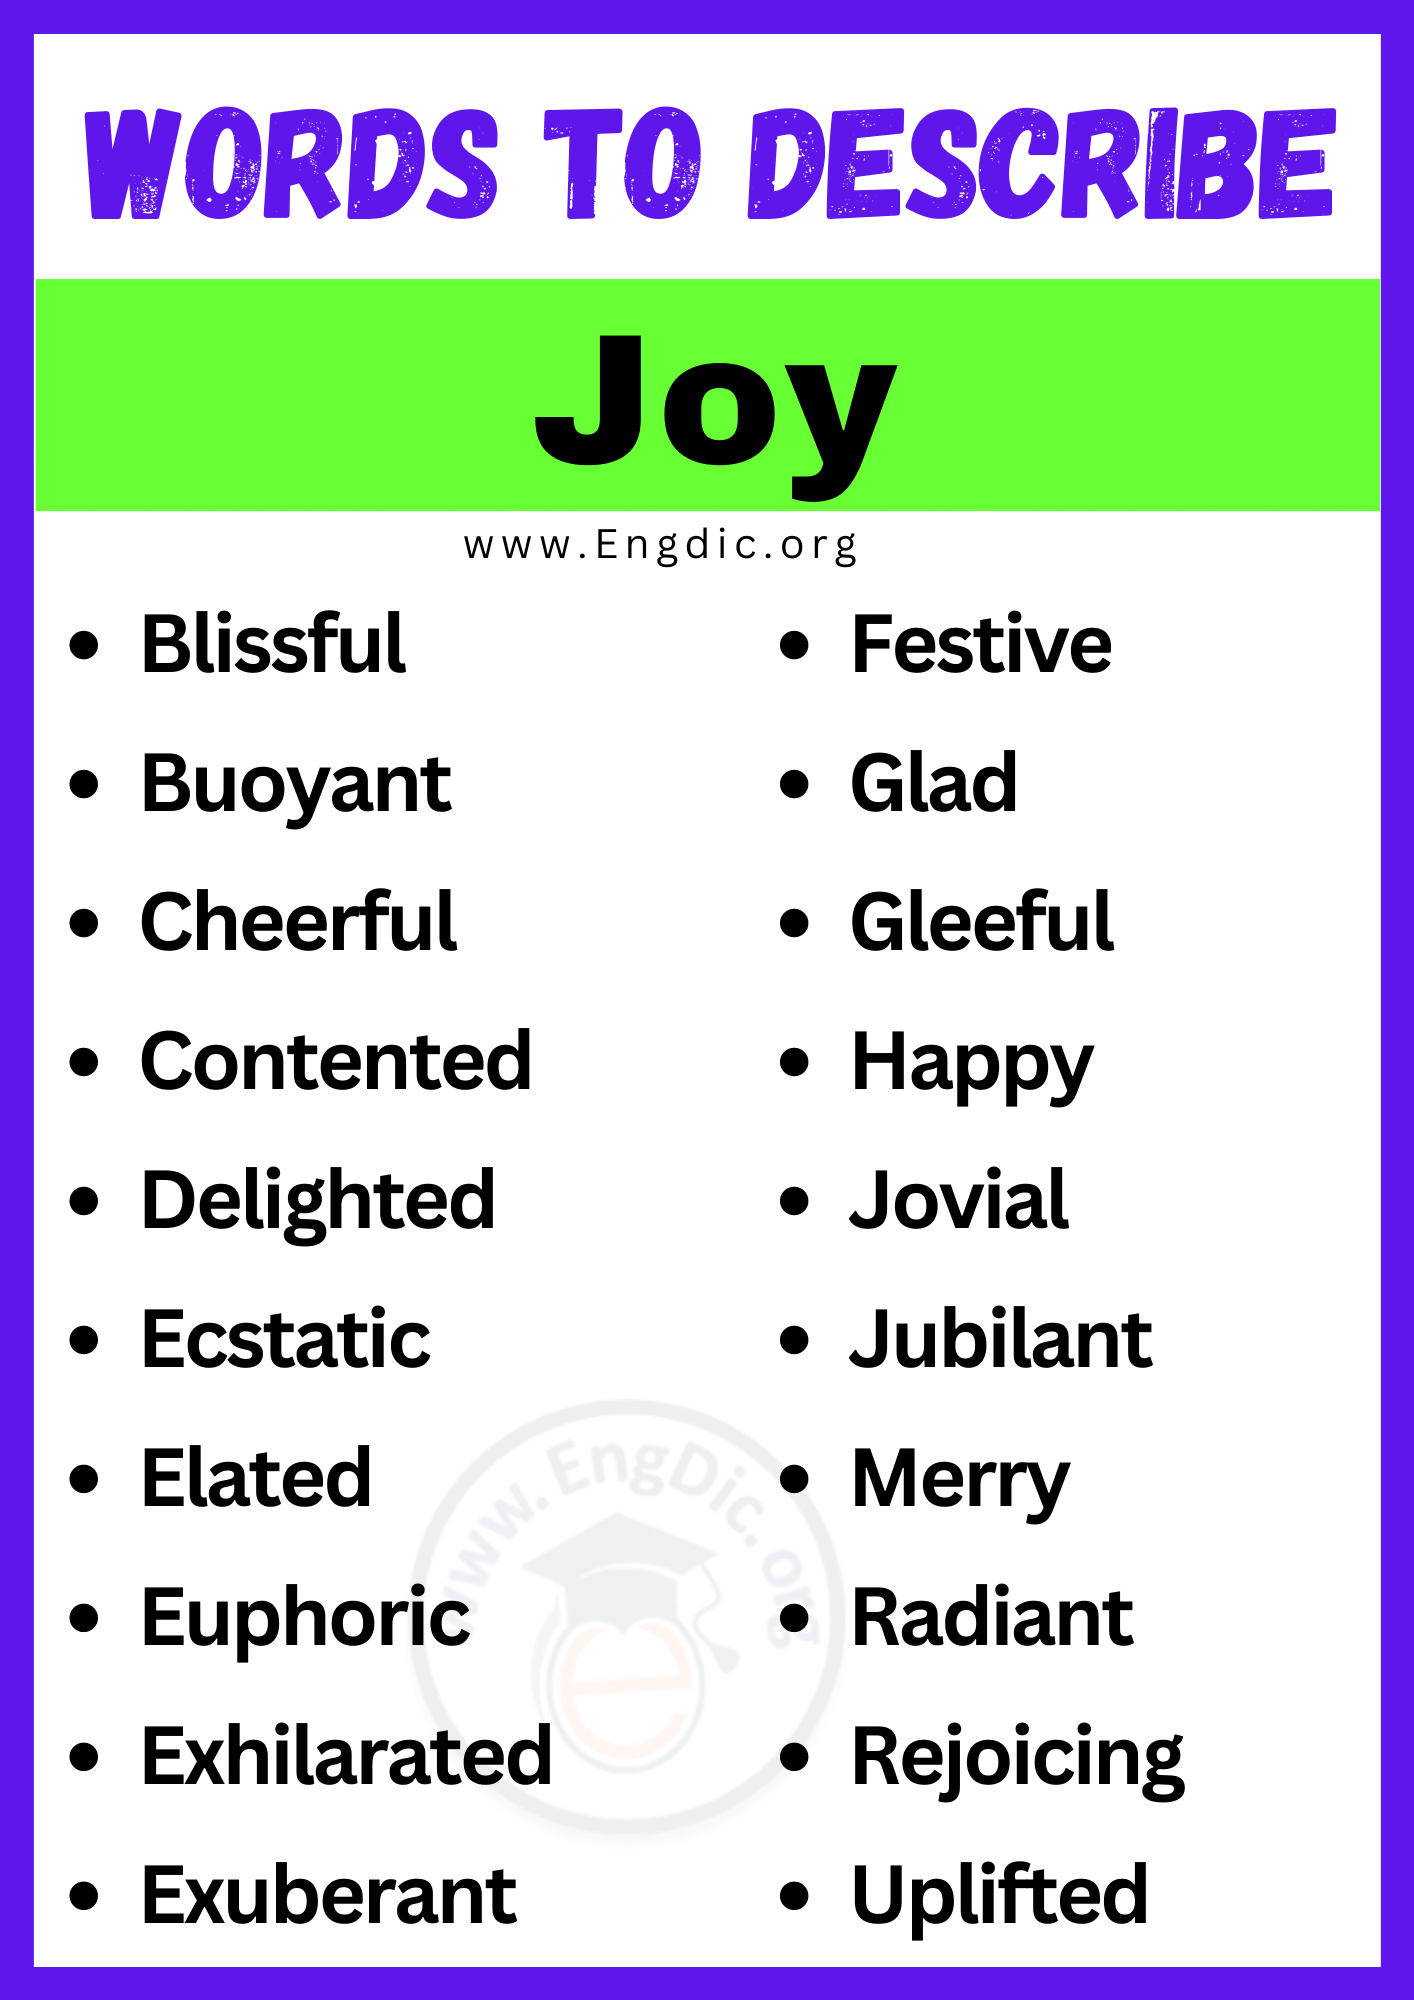 Words to Describe Joy